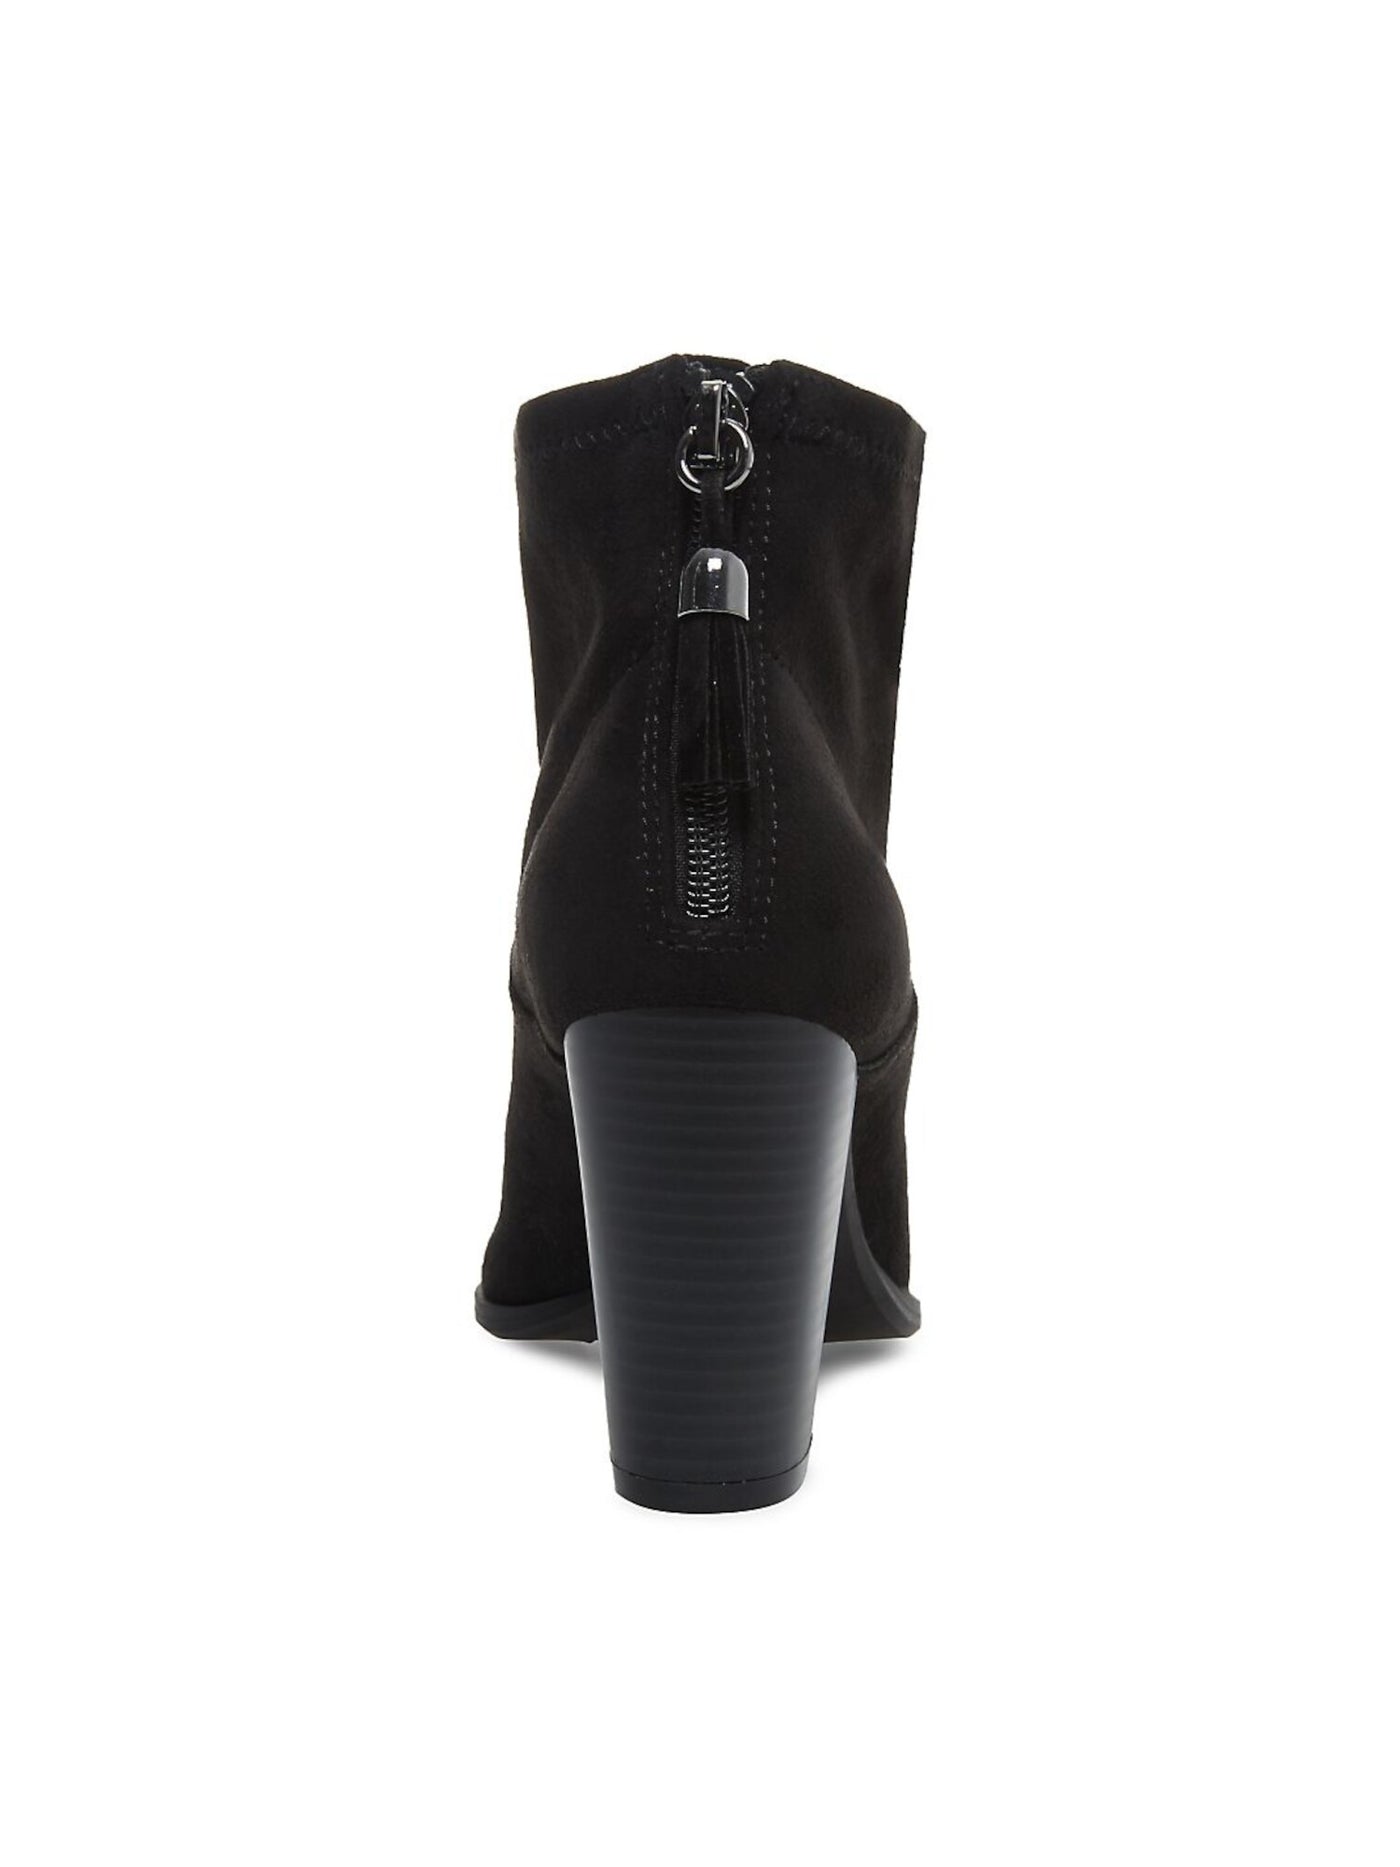 ANNE KLEIN Womens Black Shock Absorbent Tasseled Cushioned Niccie Almond Toe Block Heel Zip-Up Leather Booties 8 M